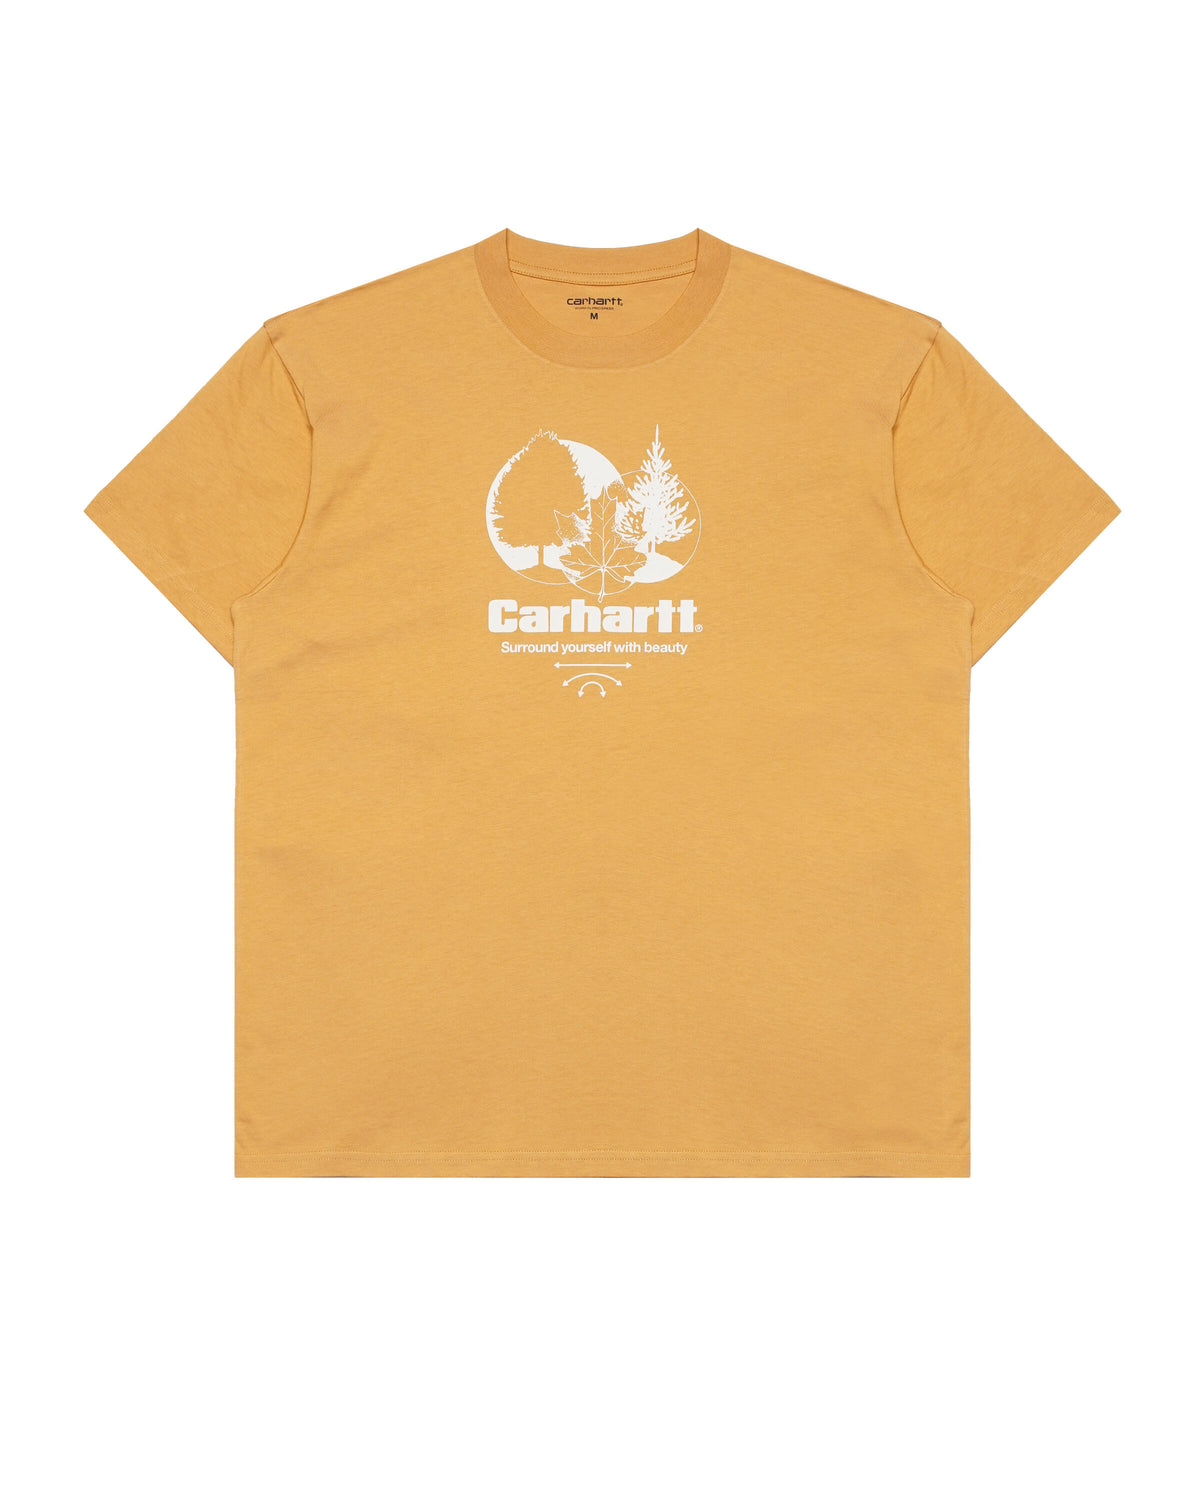 Carhartt WIP Surround T-Shirt